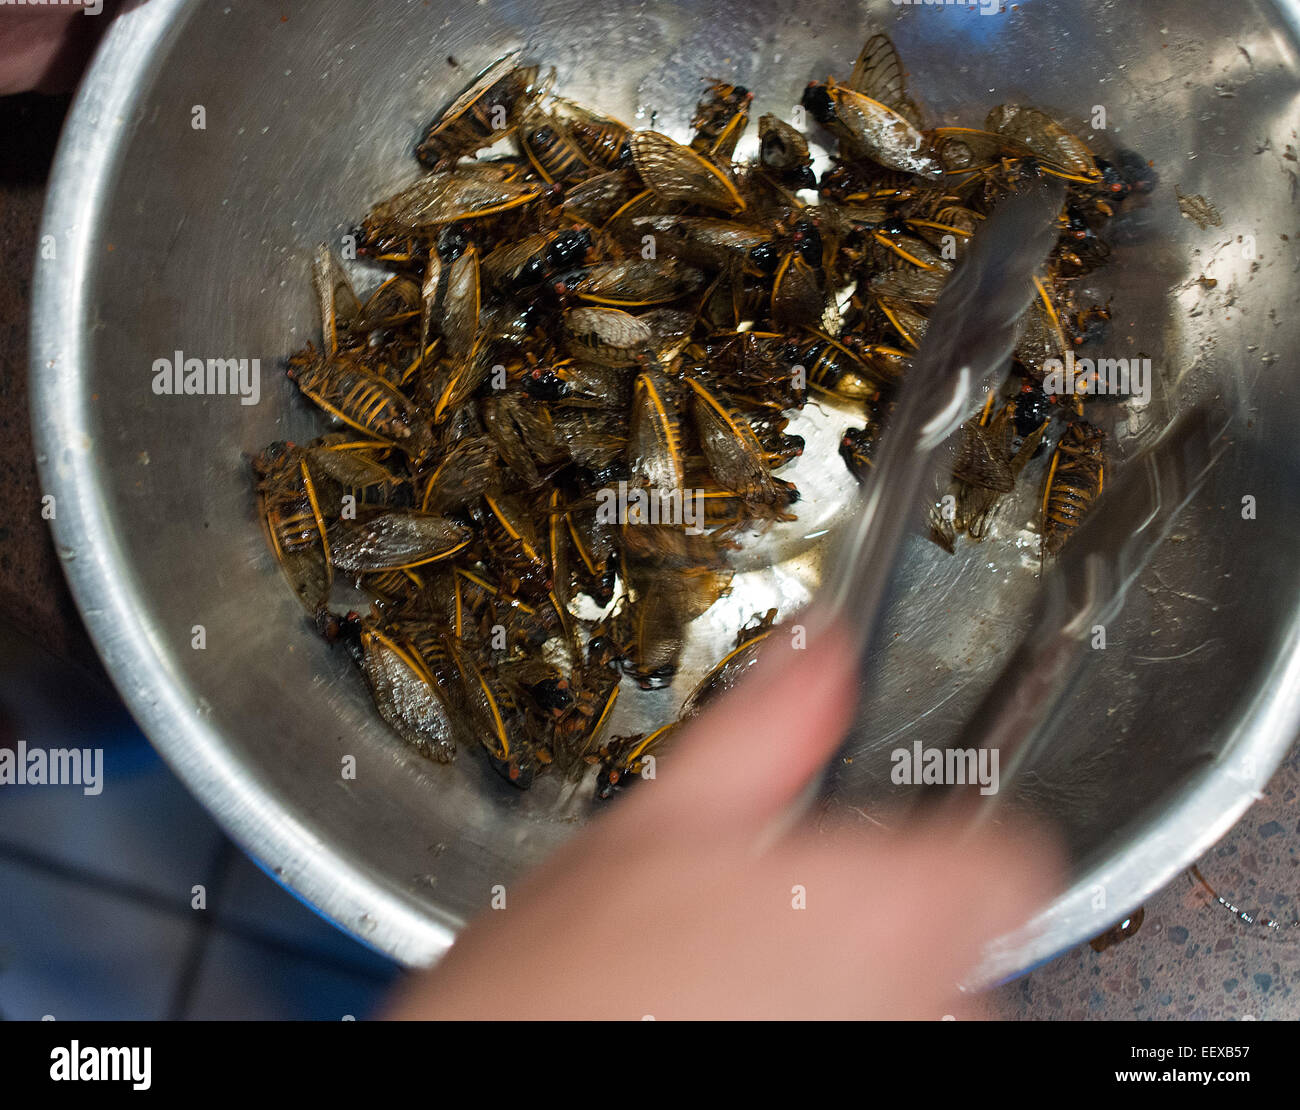 Les personnes à se préparer à l'occasion d'une fête à cigales cuisiner et manger les insectes à un accueil en CT USA Banque D'Images